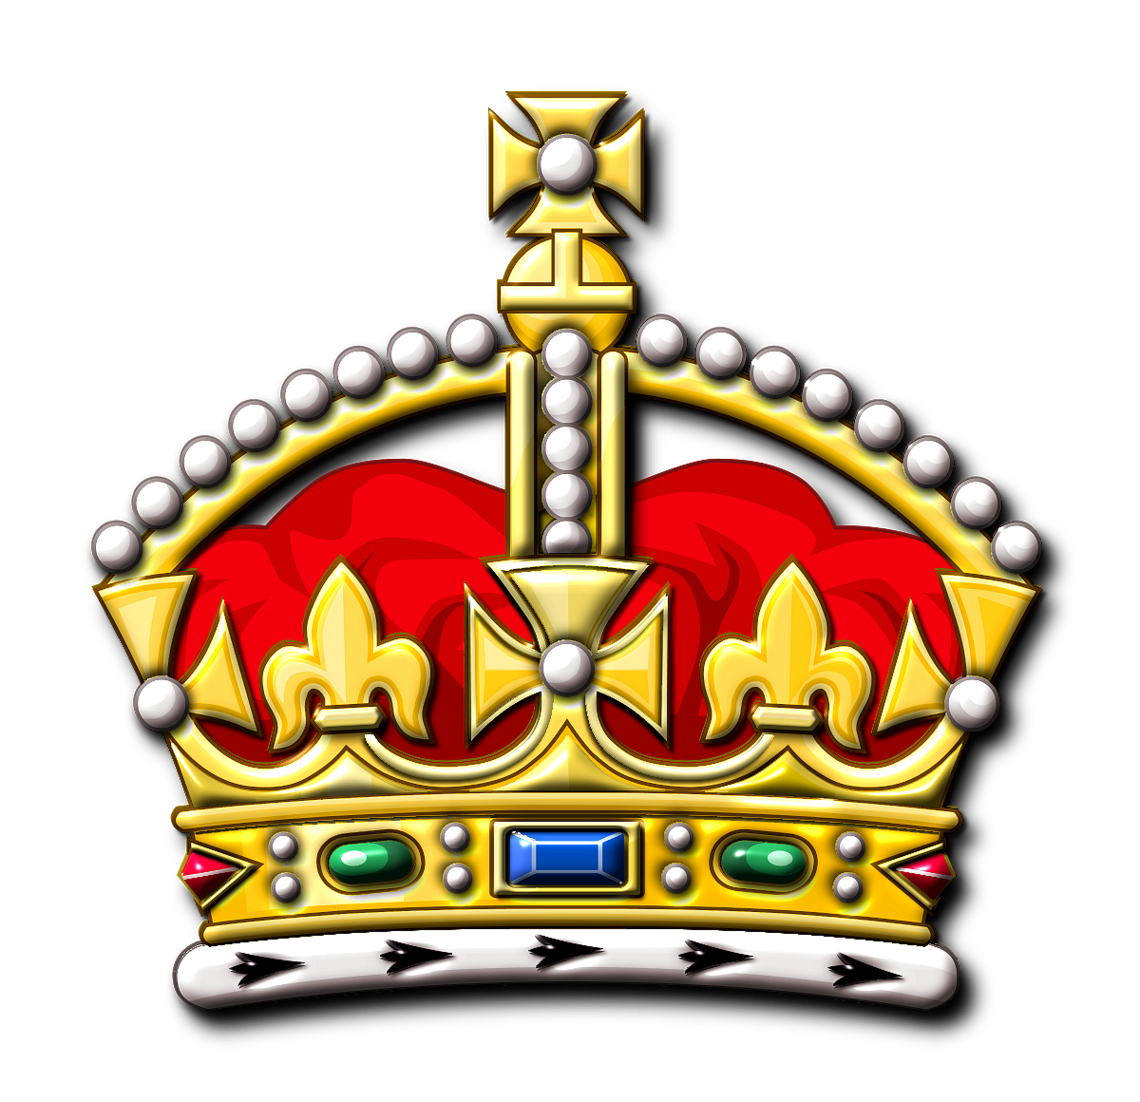 Crown logo design - sadebada